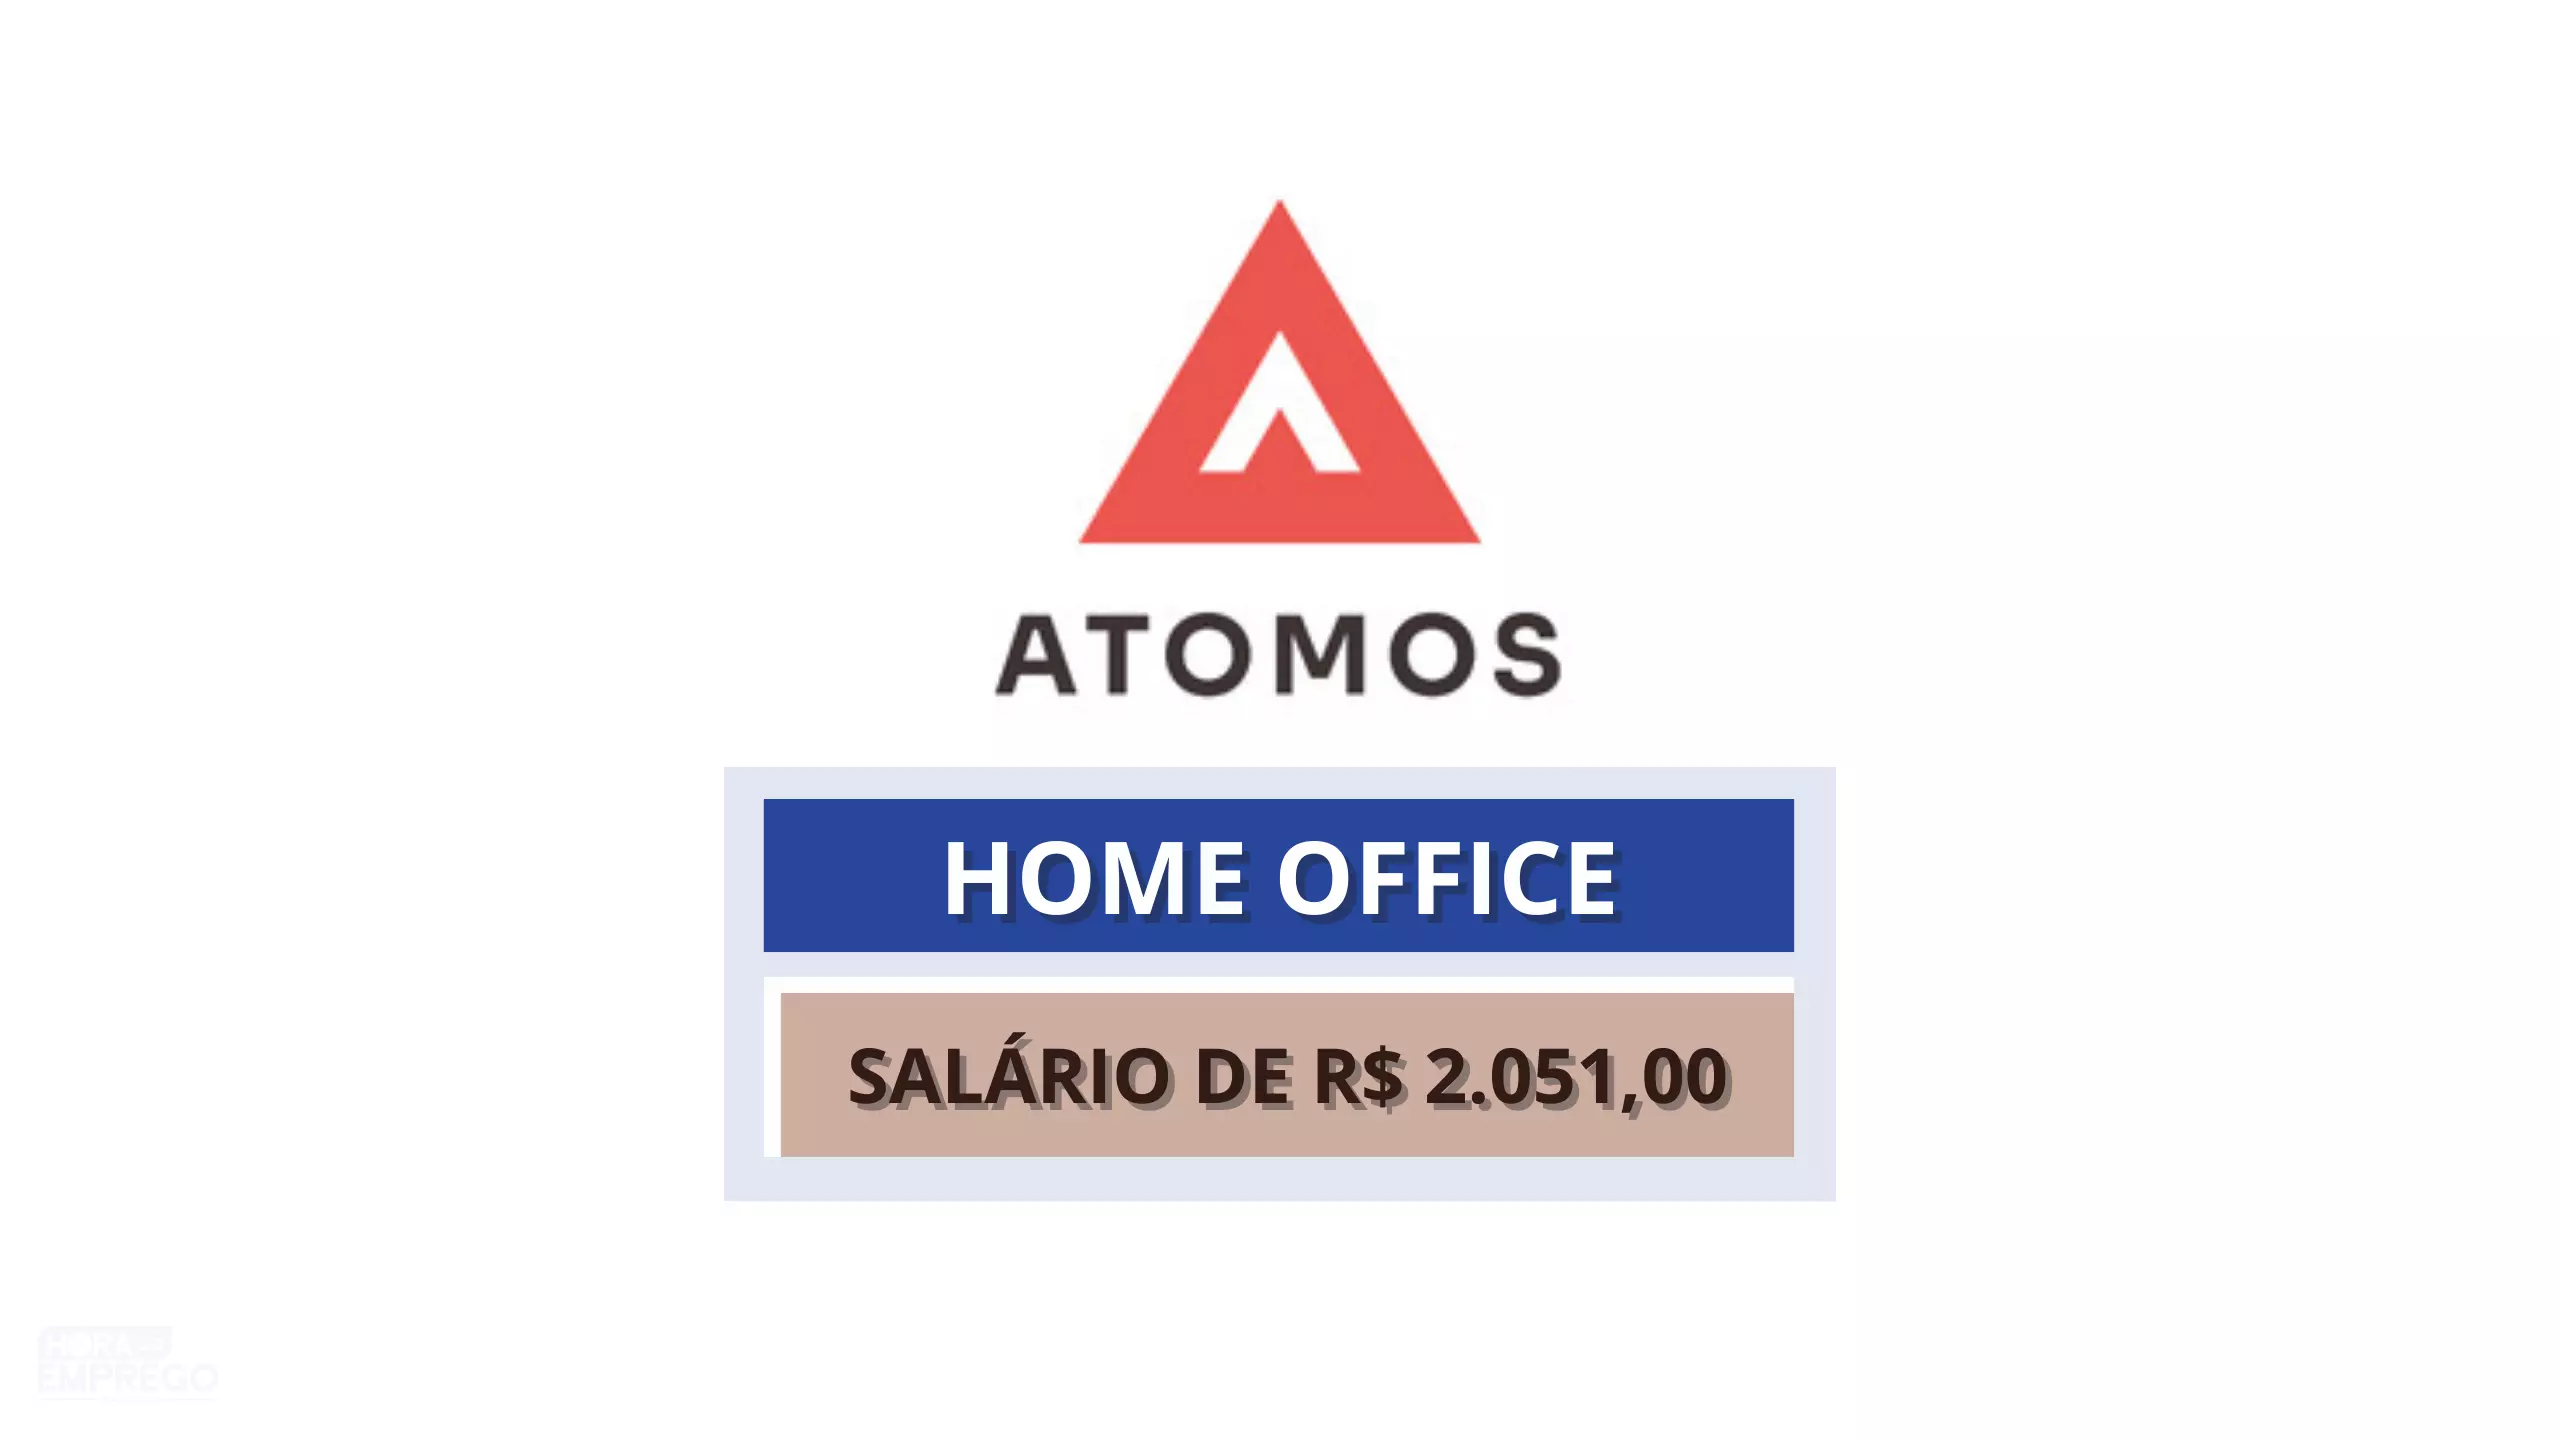 Atomos Brasil abre vaga 100% Home Office para Operador de Conexões com salário de R$ 2.051,00